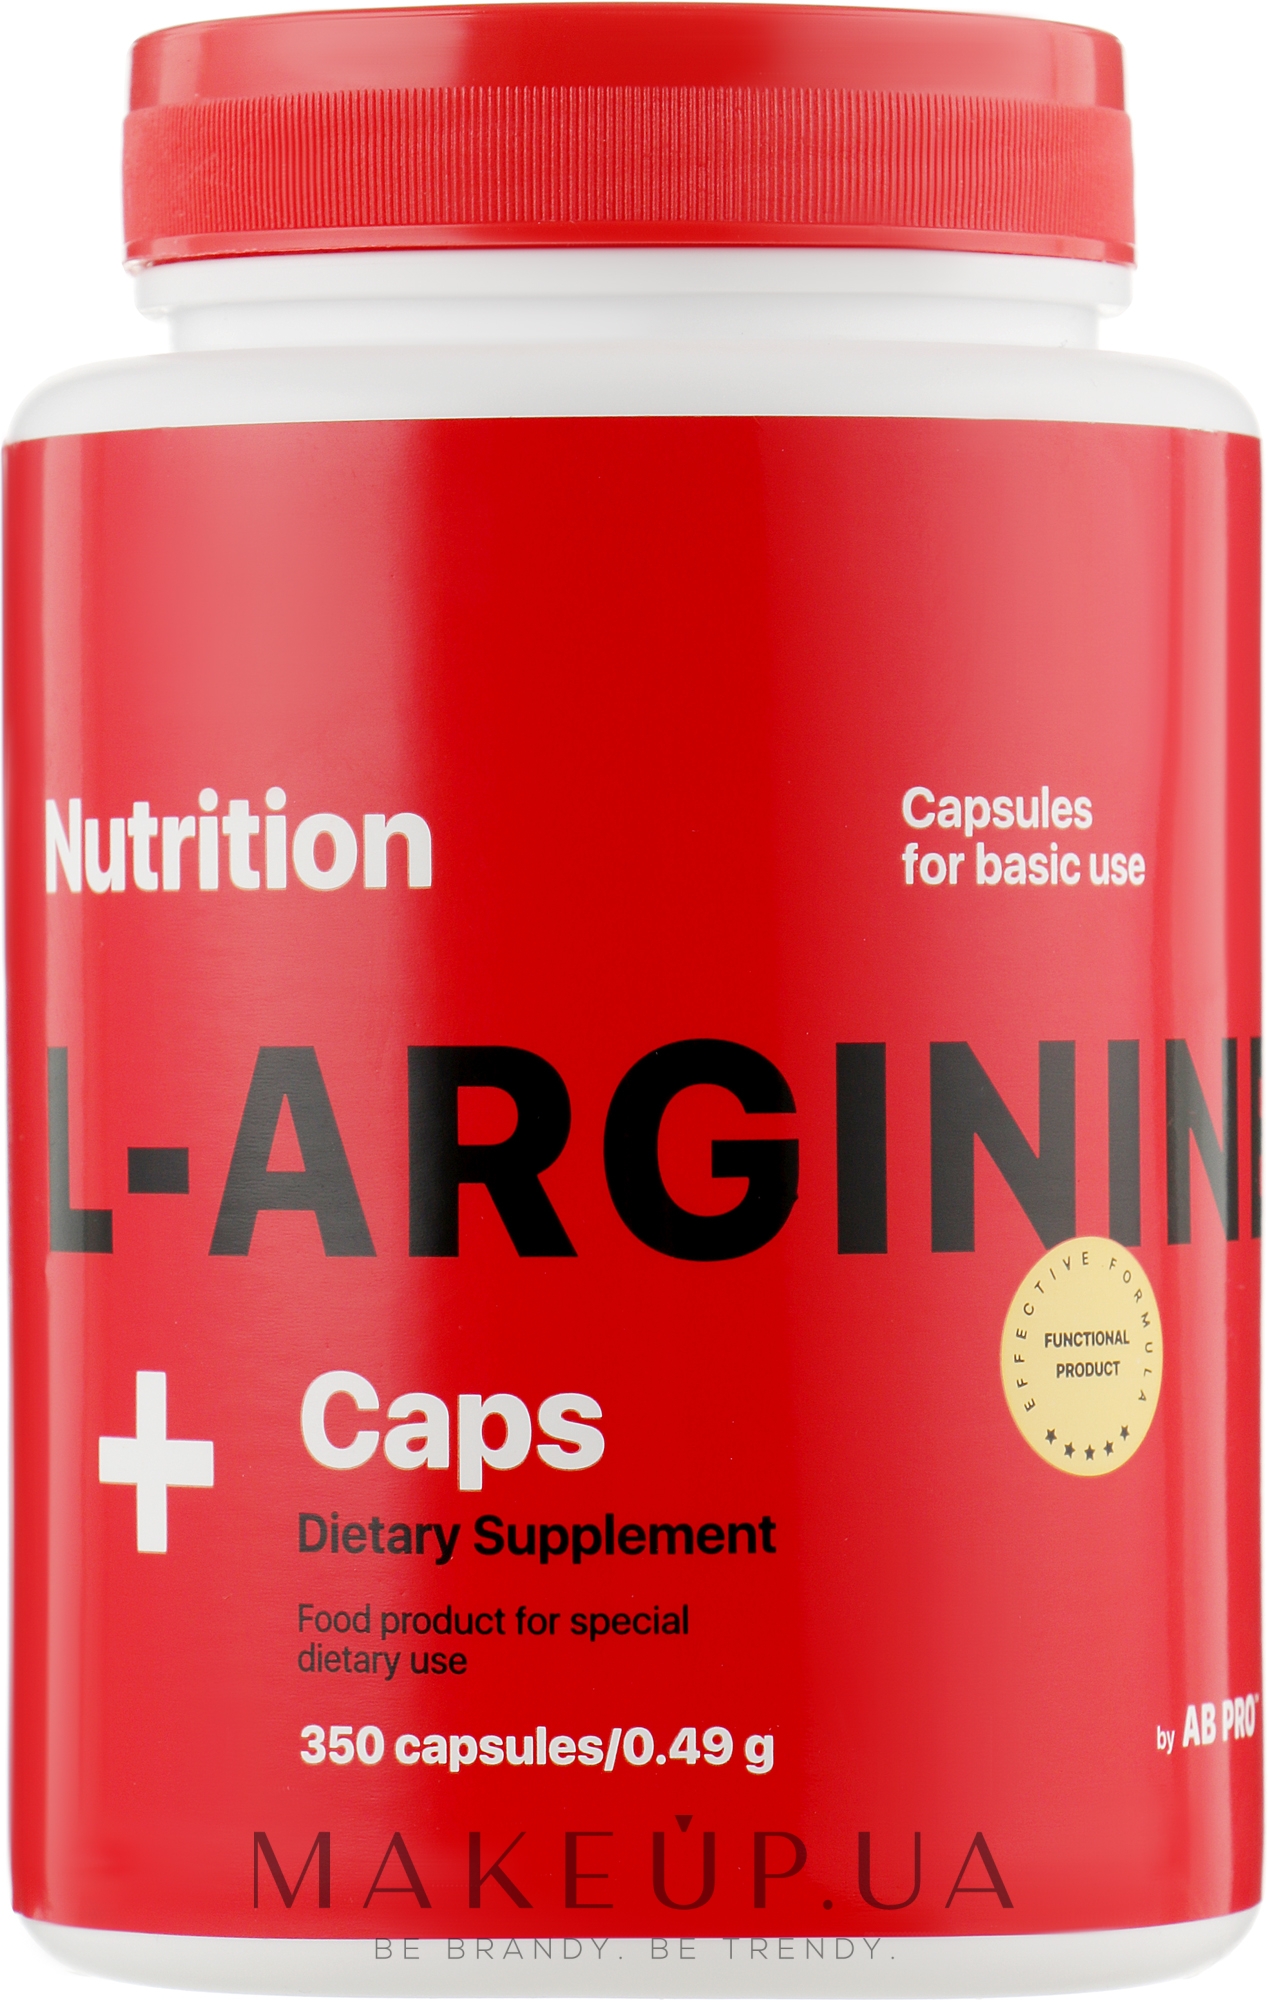 Аминокислота L-Arginine Caps, 350 капсул - AB PRO — фото 350шт